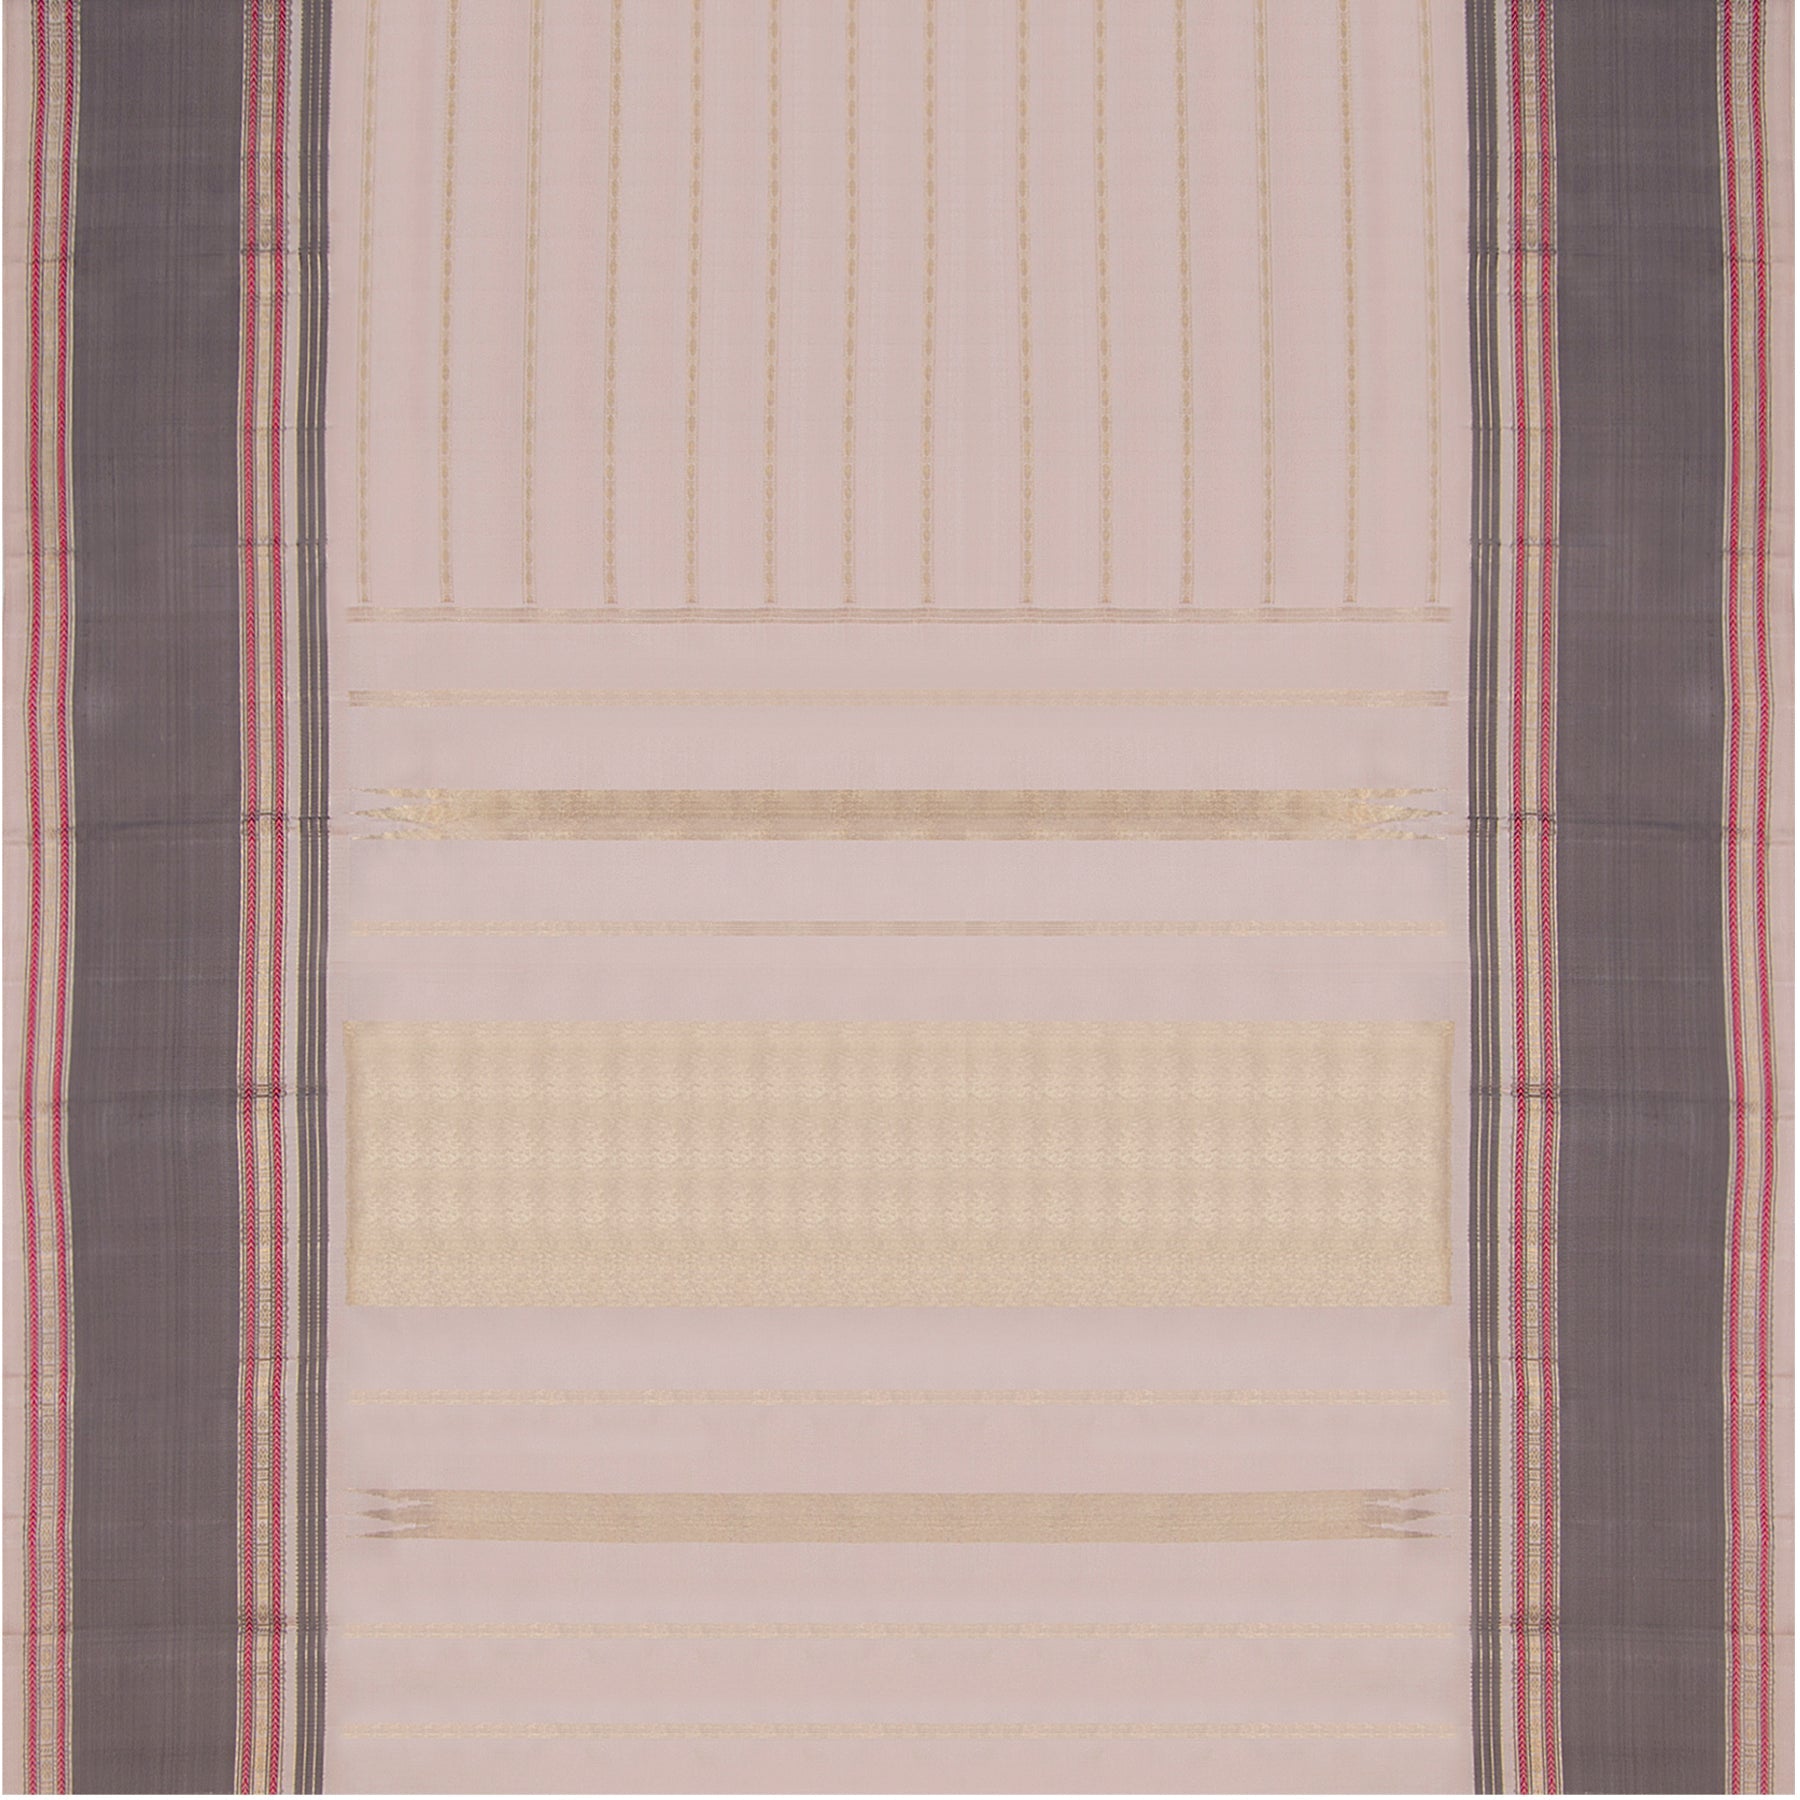 Kanakavalli Kanjivaram Silk Sari 22-040-HS001-15018 - Full View